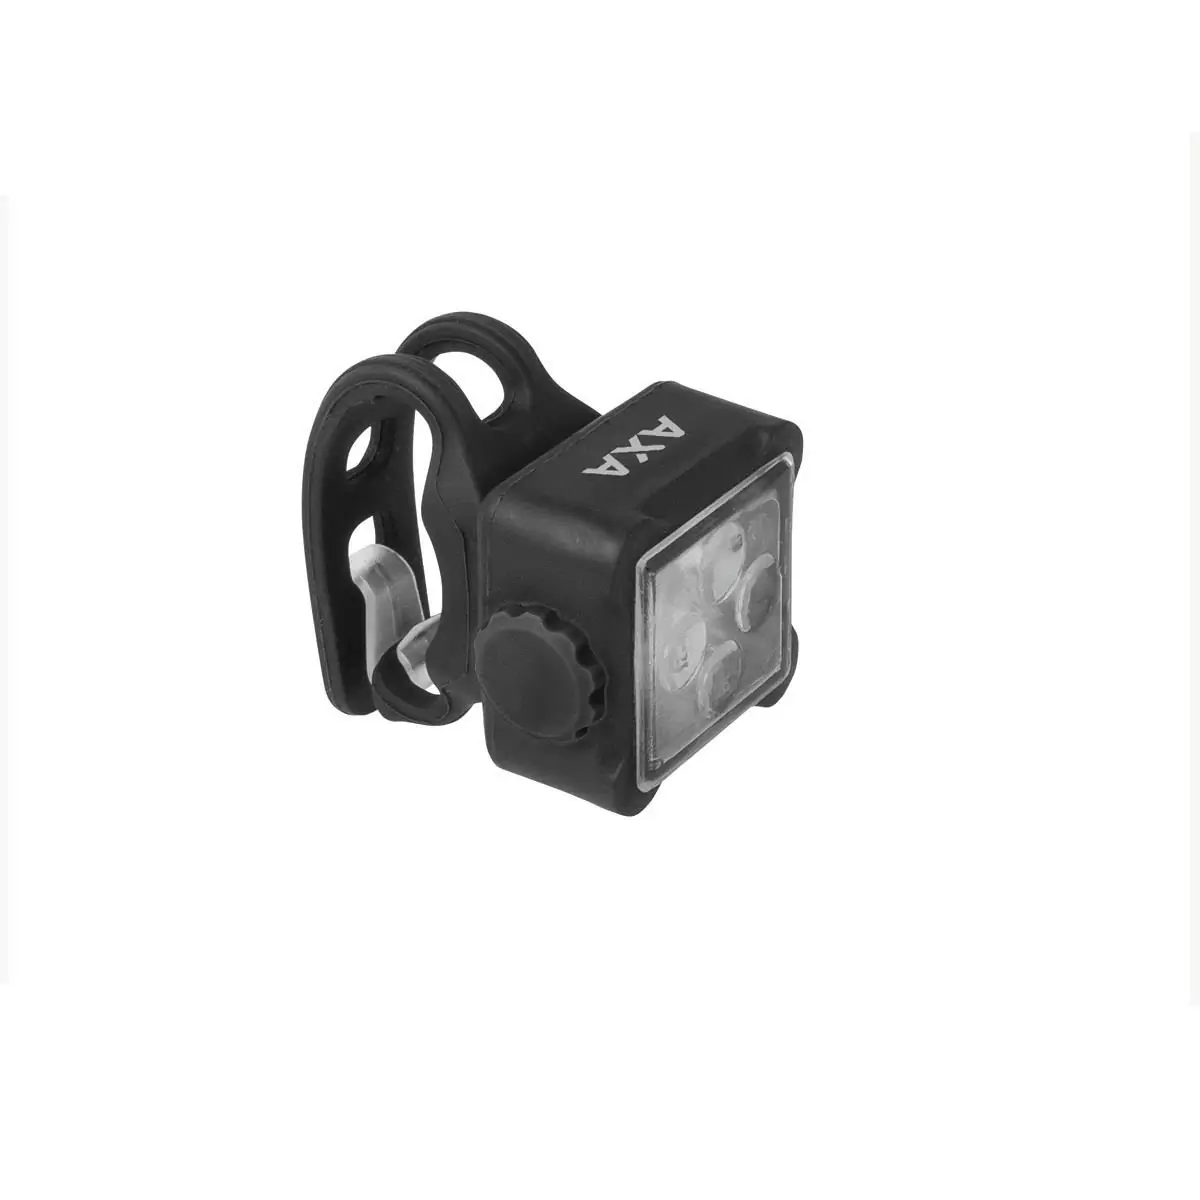 Kit Niteline 44-R luz delantera y trasera USB #1